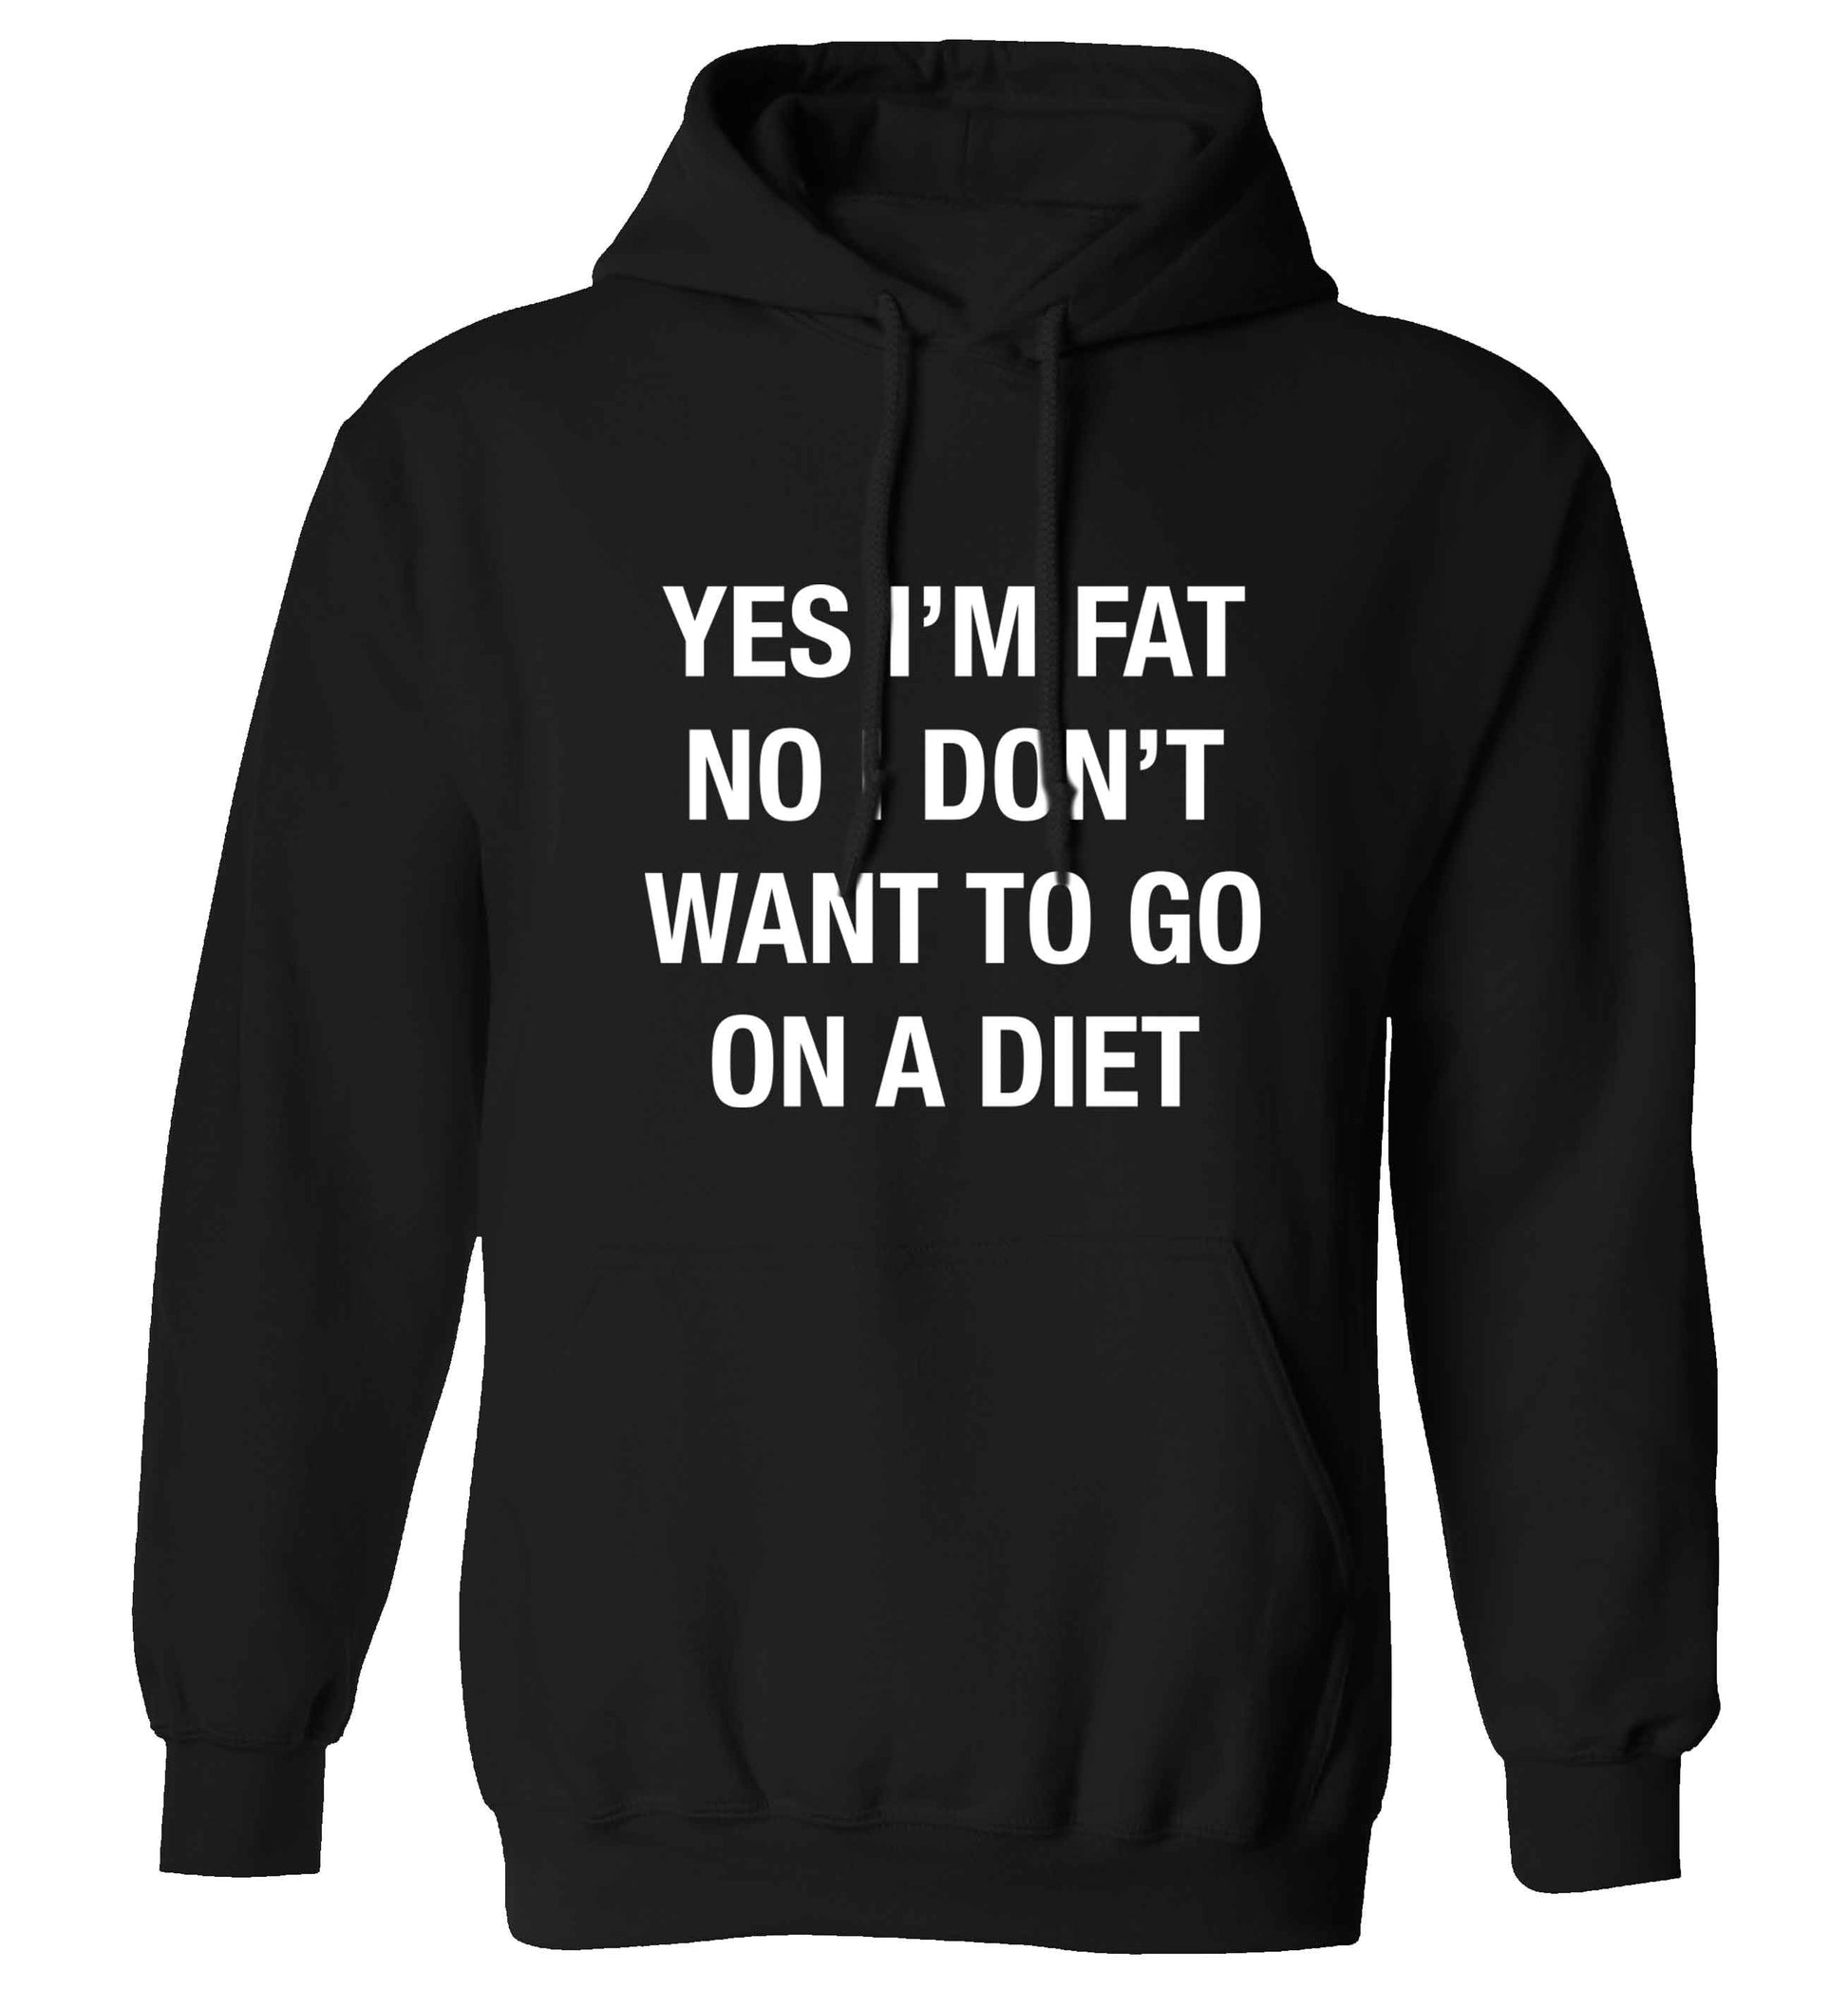 Yes I'm fat, no I don't want to go on a diet adults unisex black hoodie 2XL